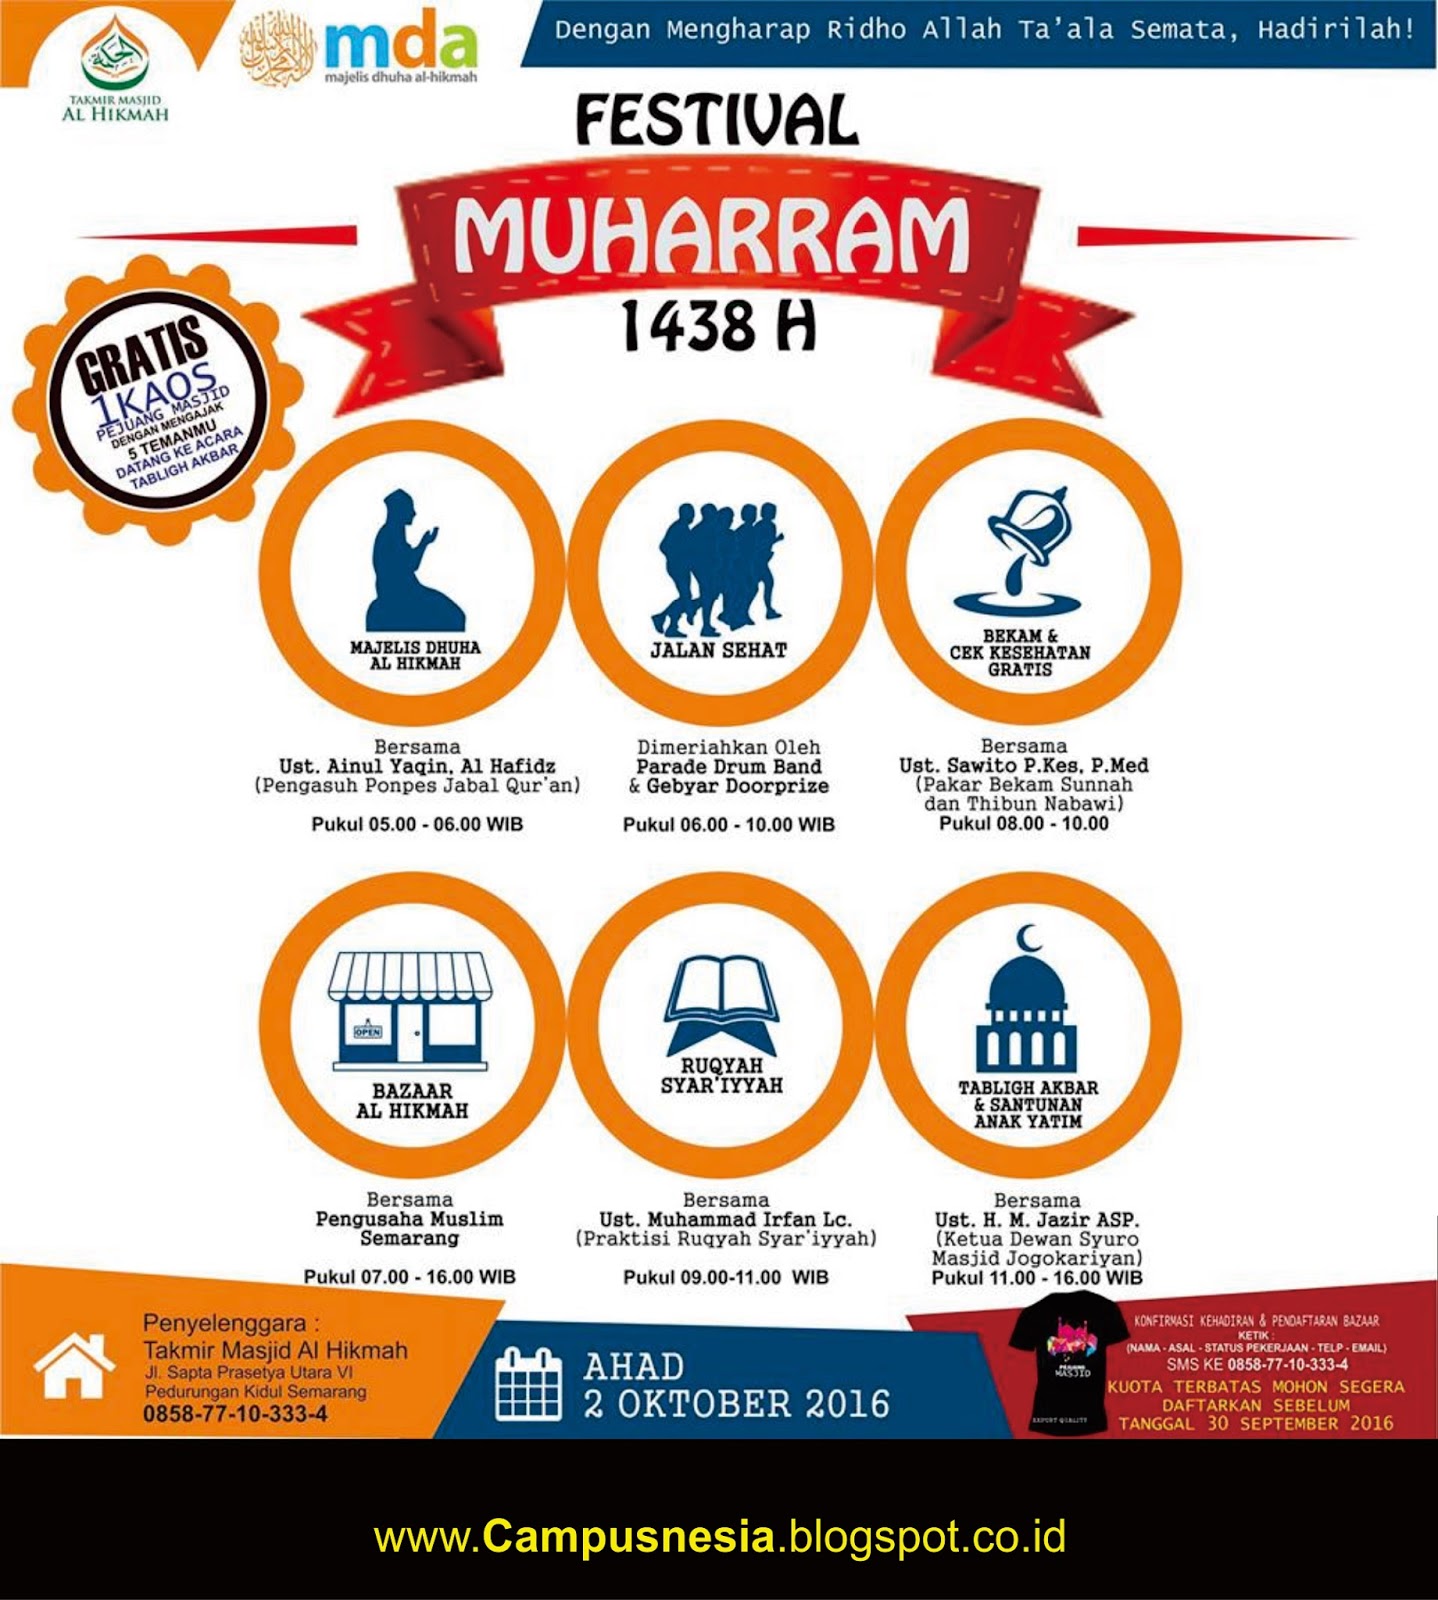 Festival Muharram 1438 H - Campusnesia